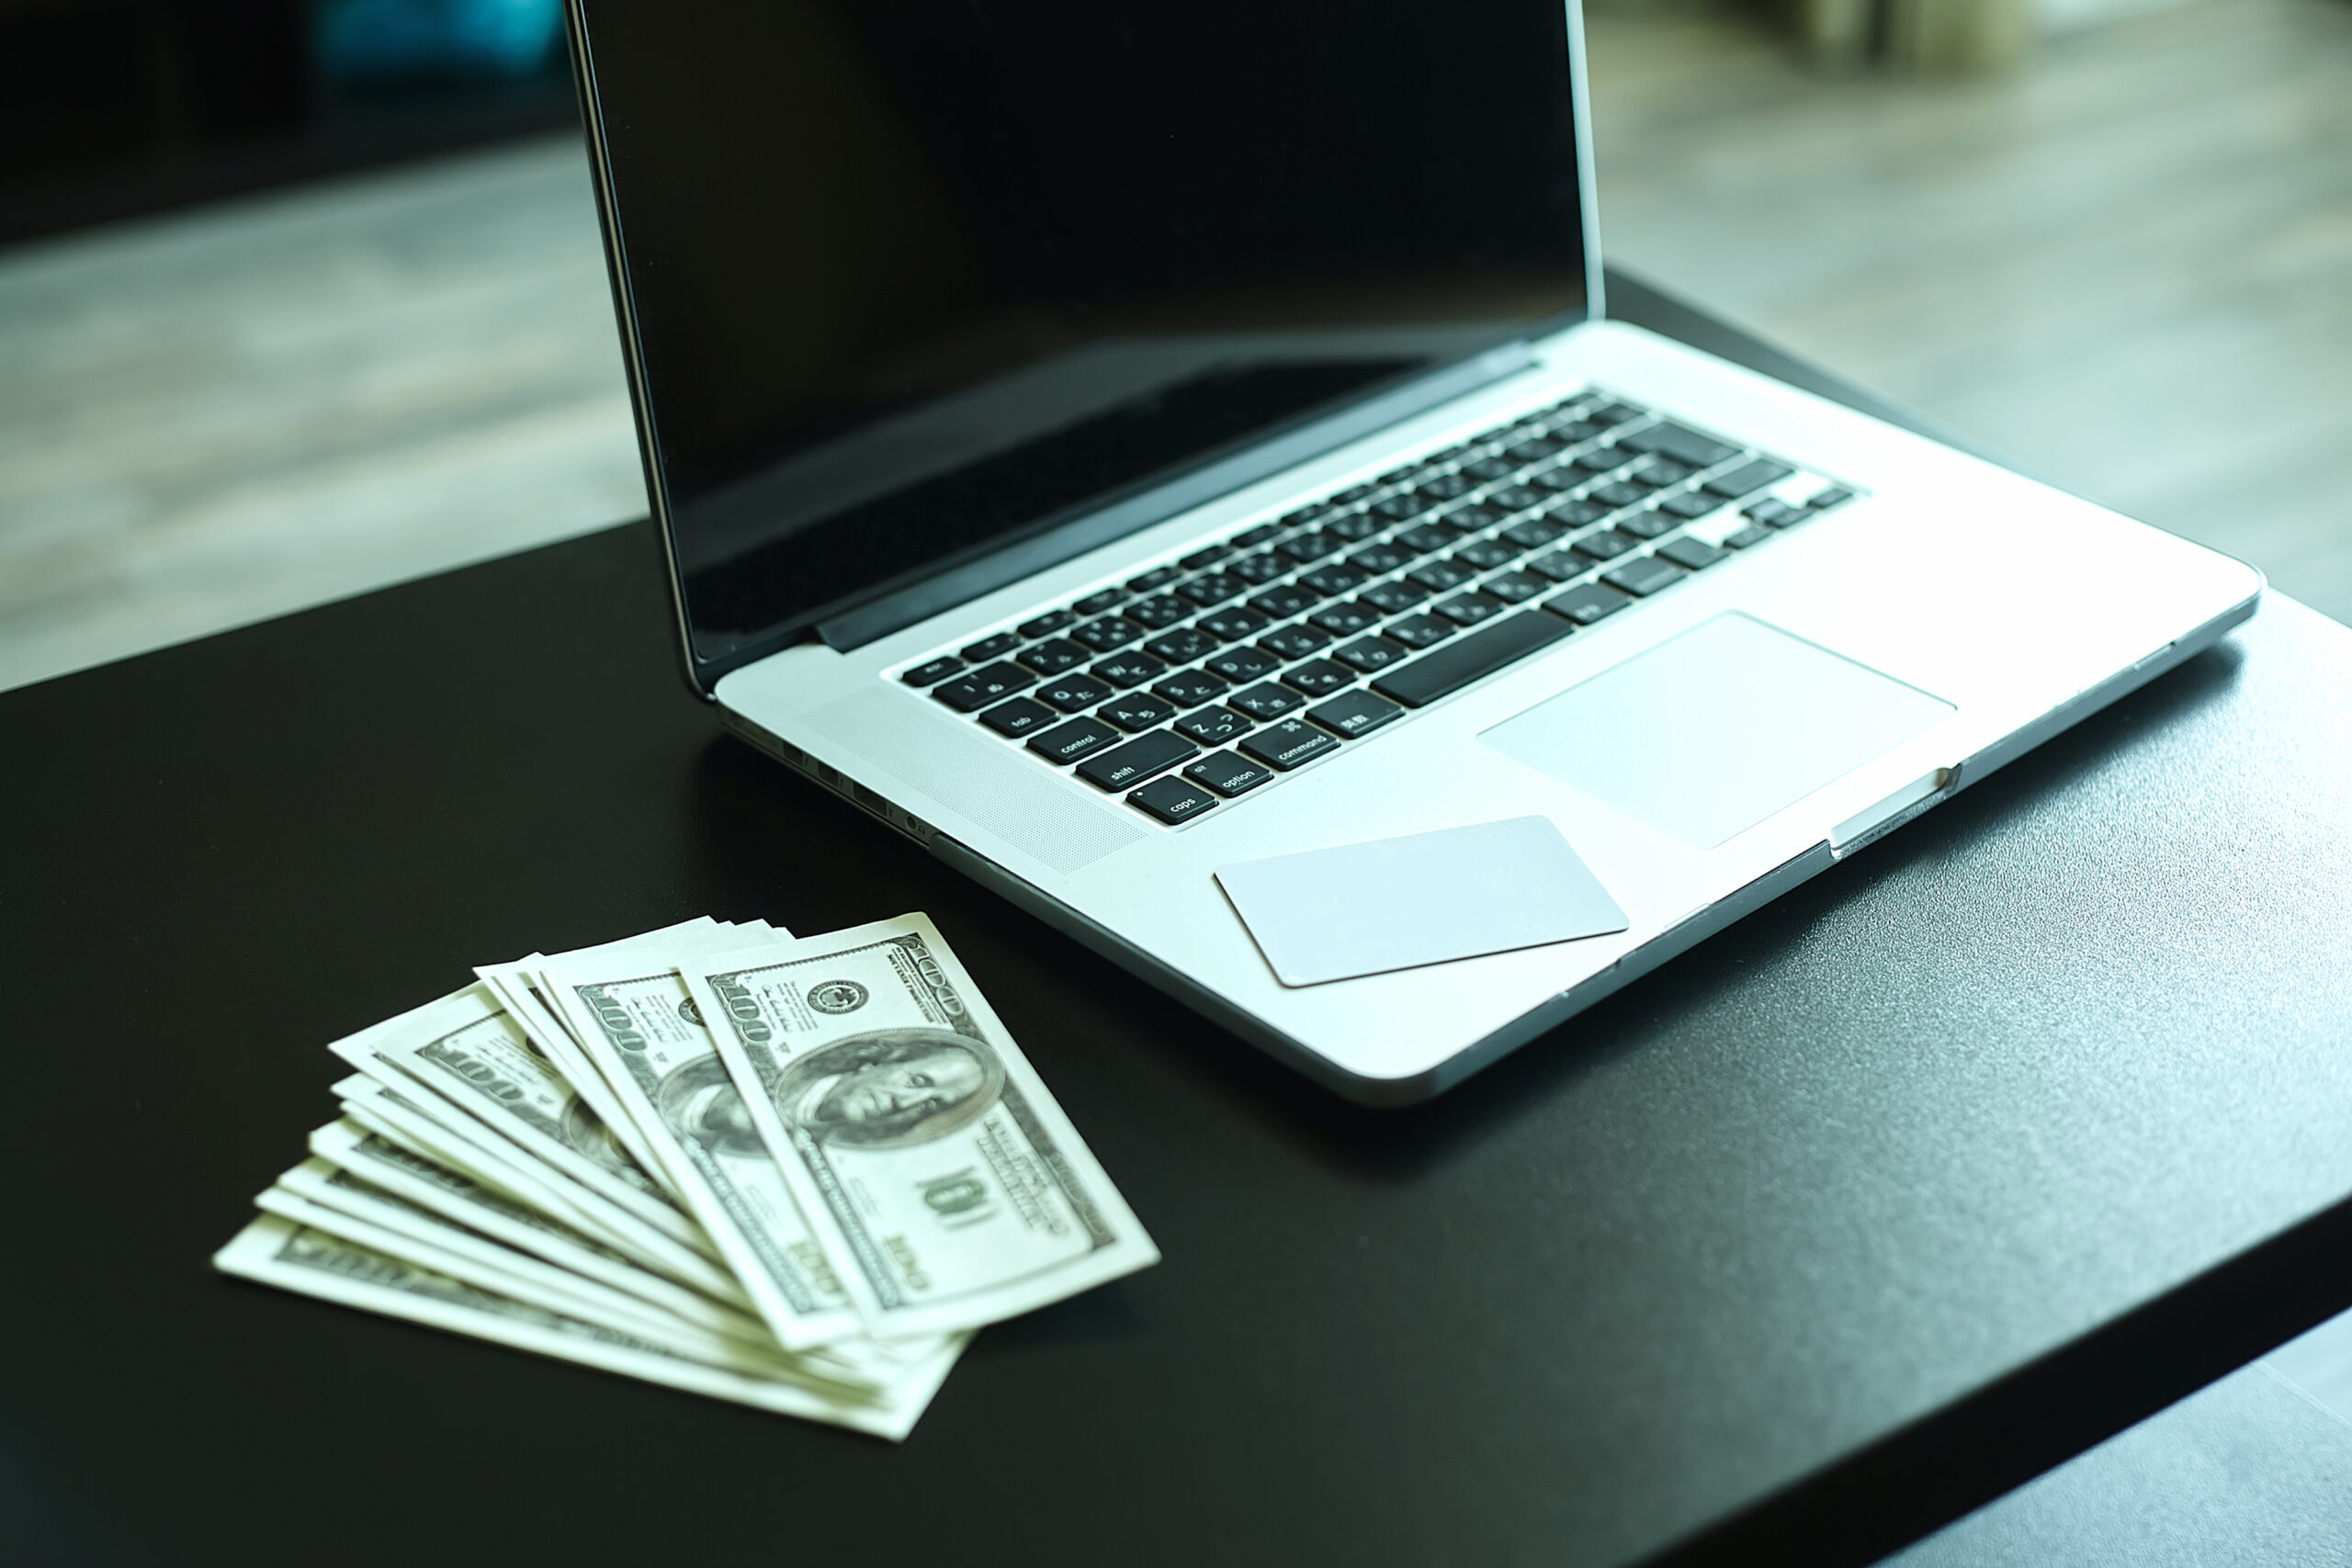 Ways To Earn Money Online